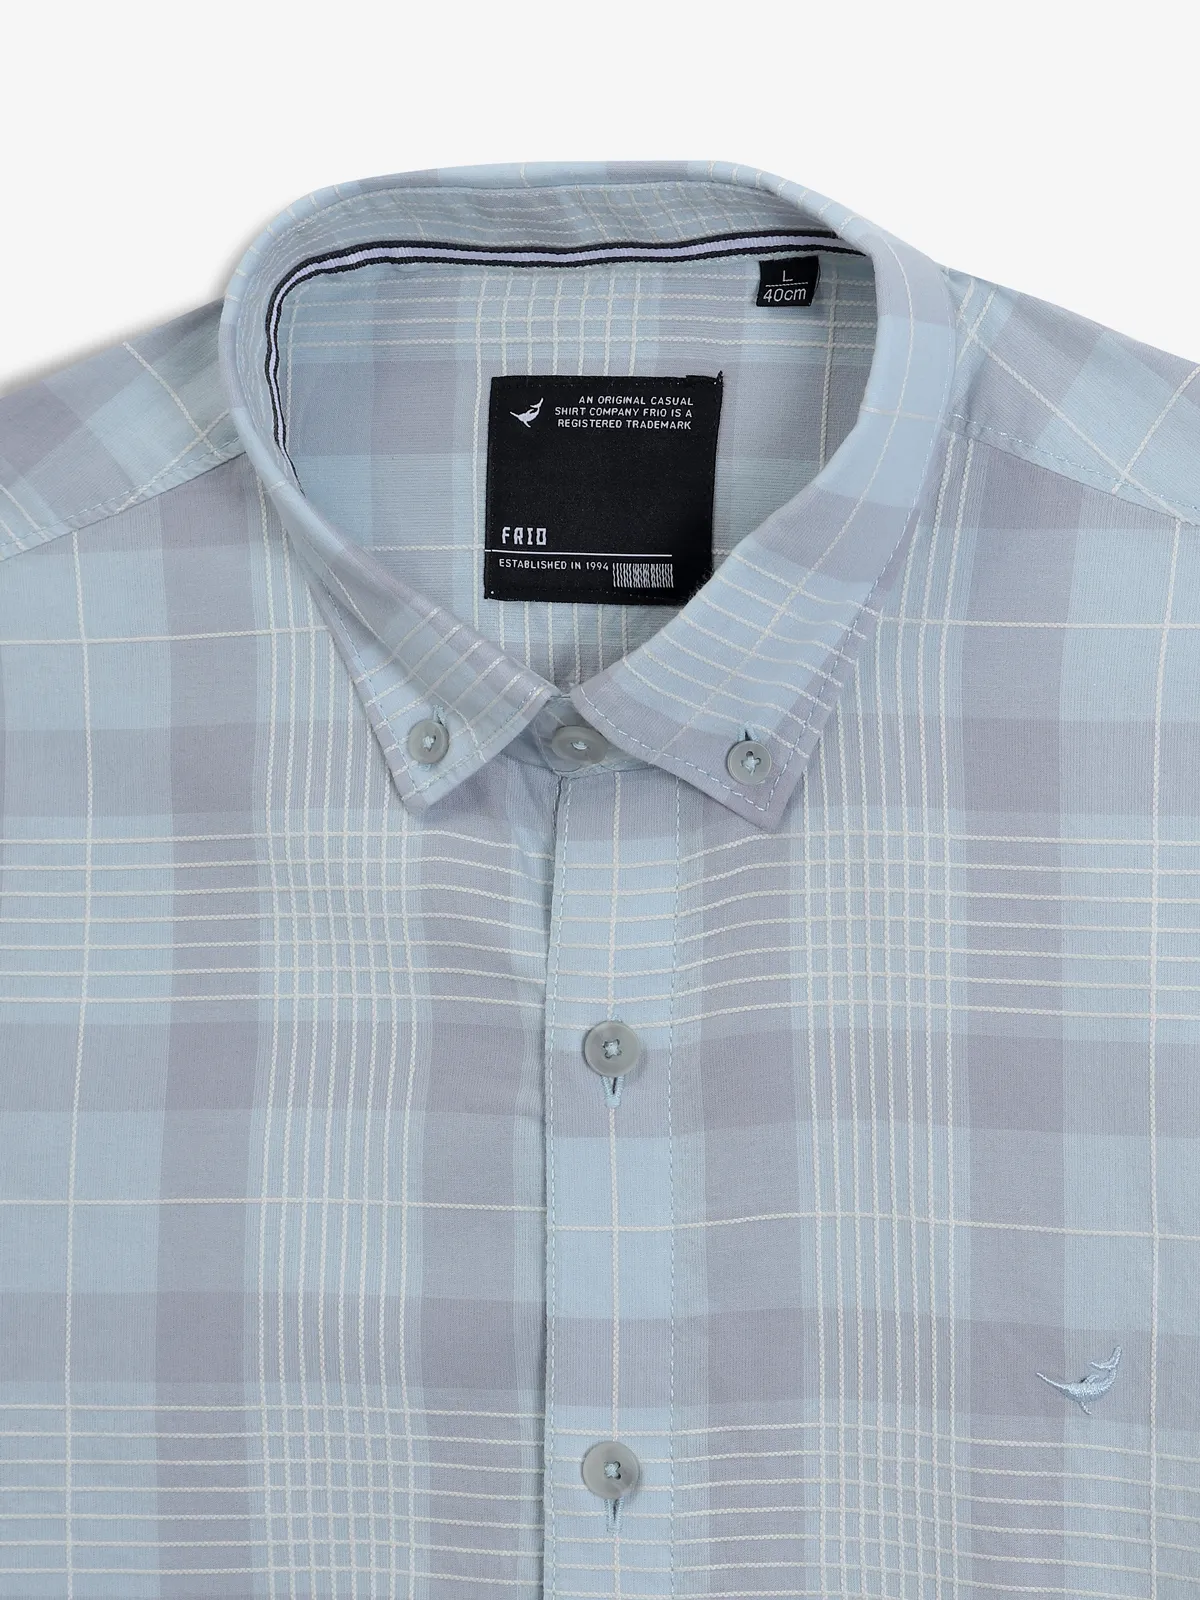 FRIO light blue checks cotton casual shirt